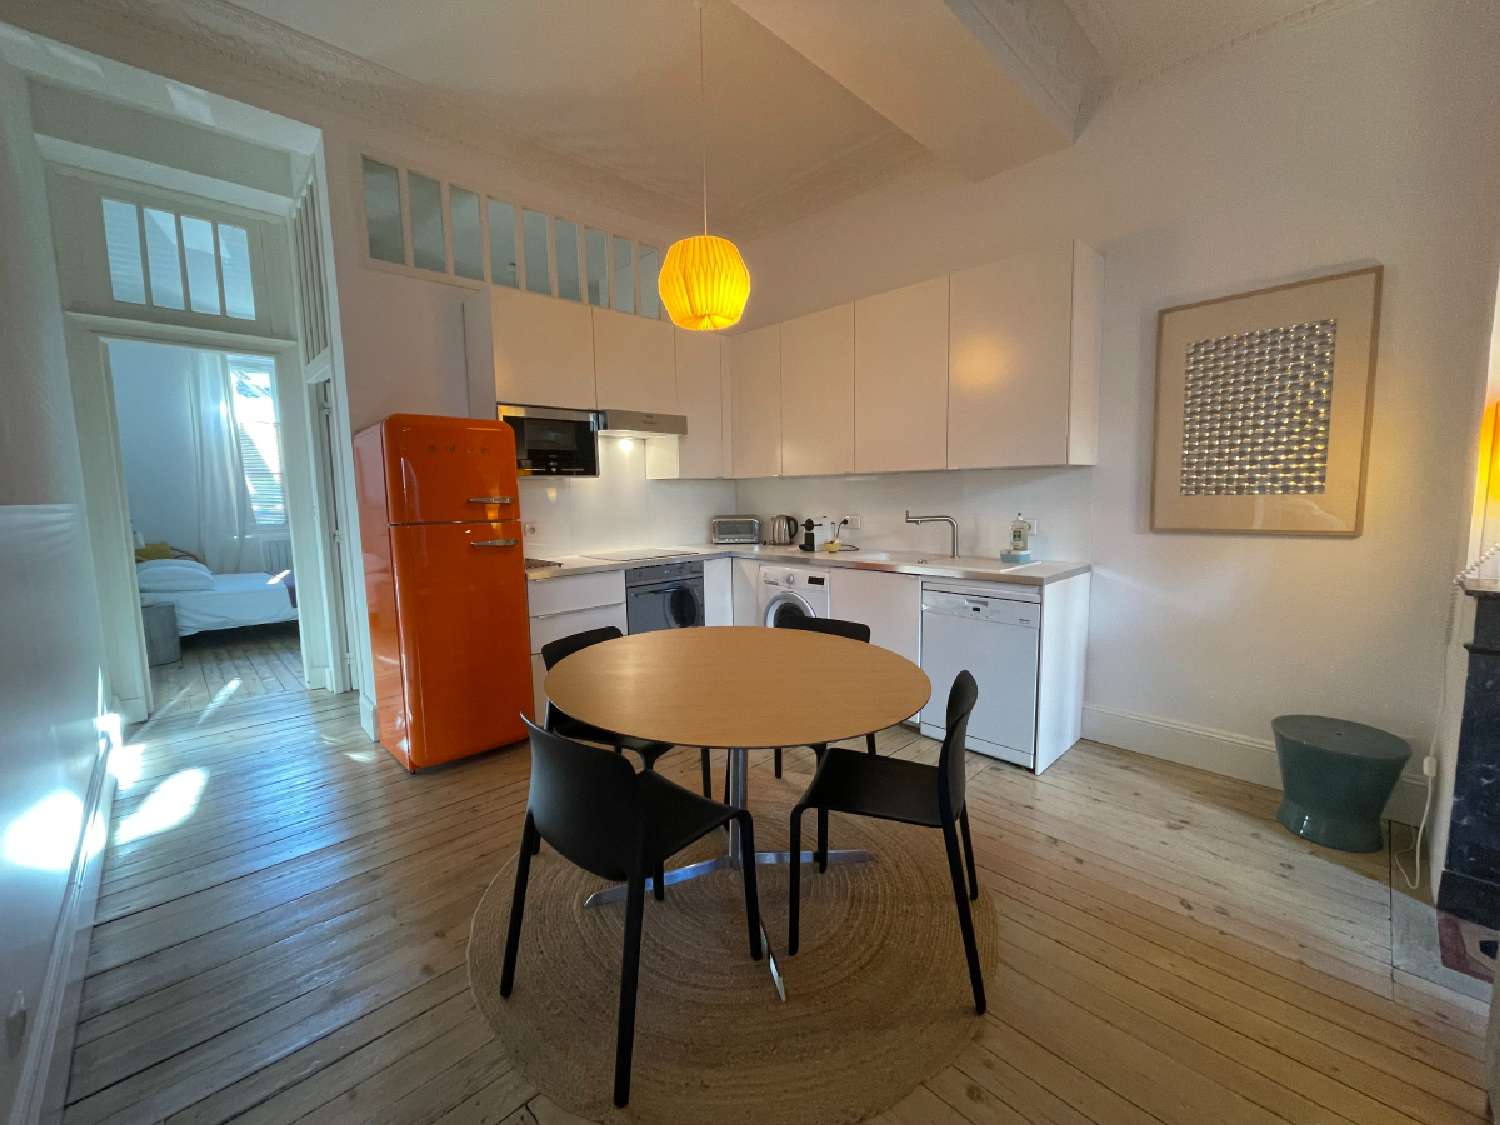 Agen Lot-et-Garonne Wohnung/ Apartment Bild 6811315